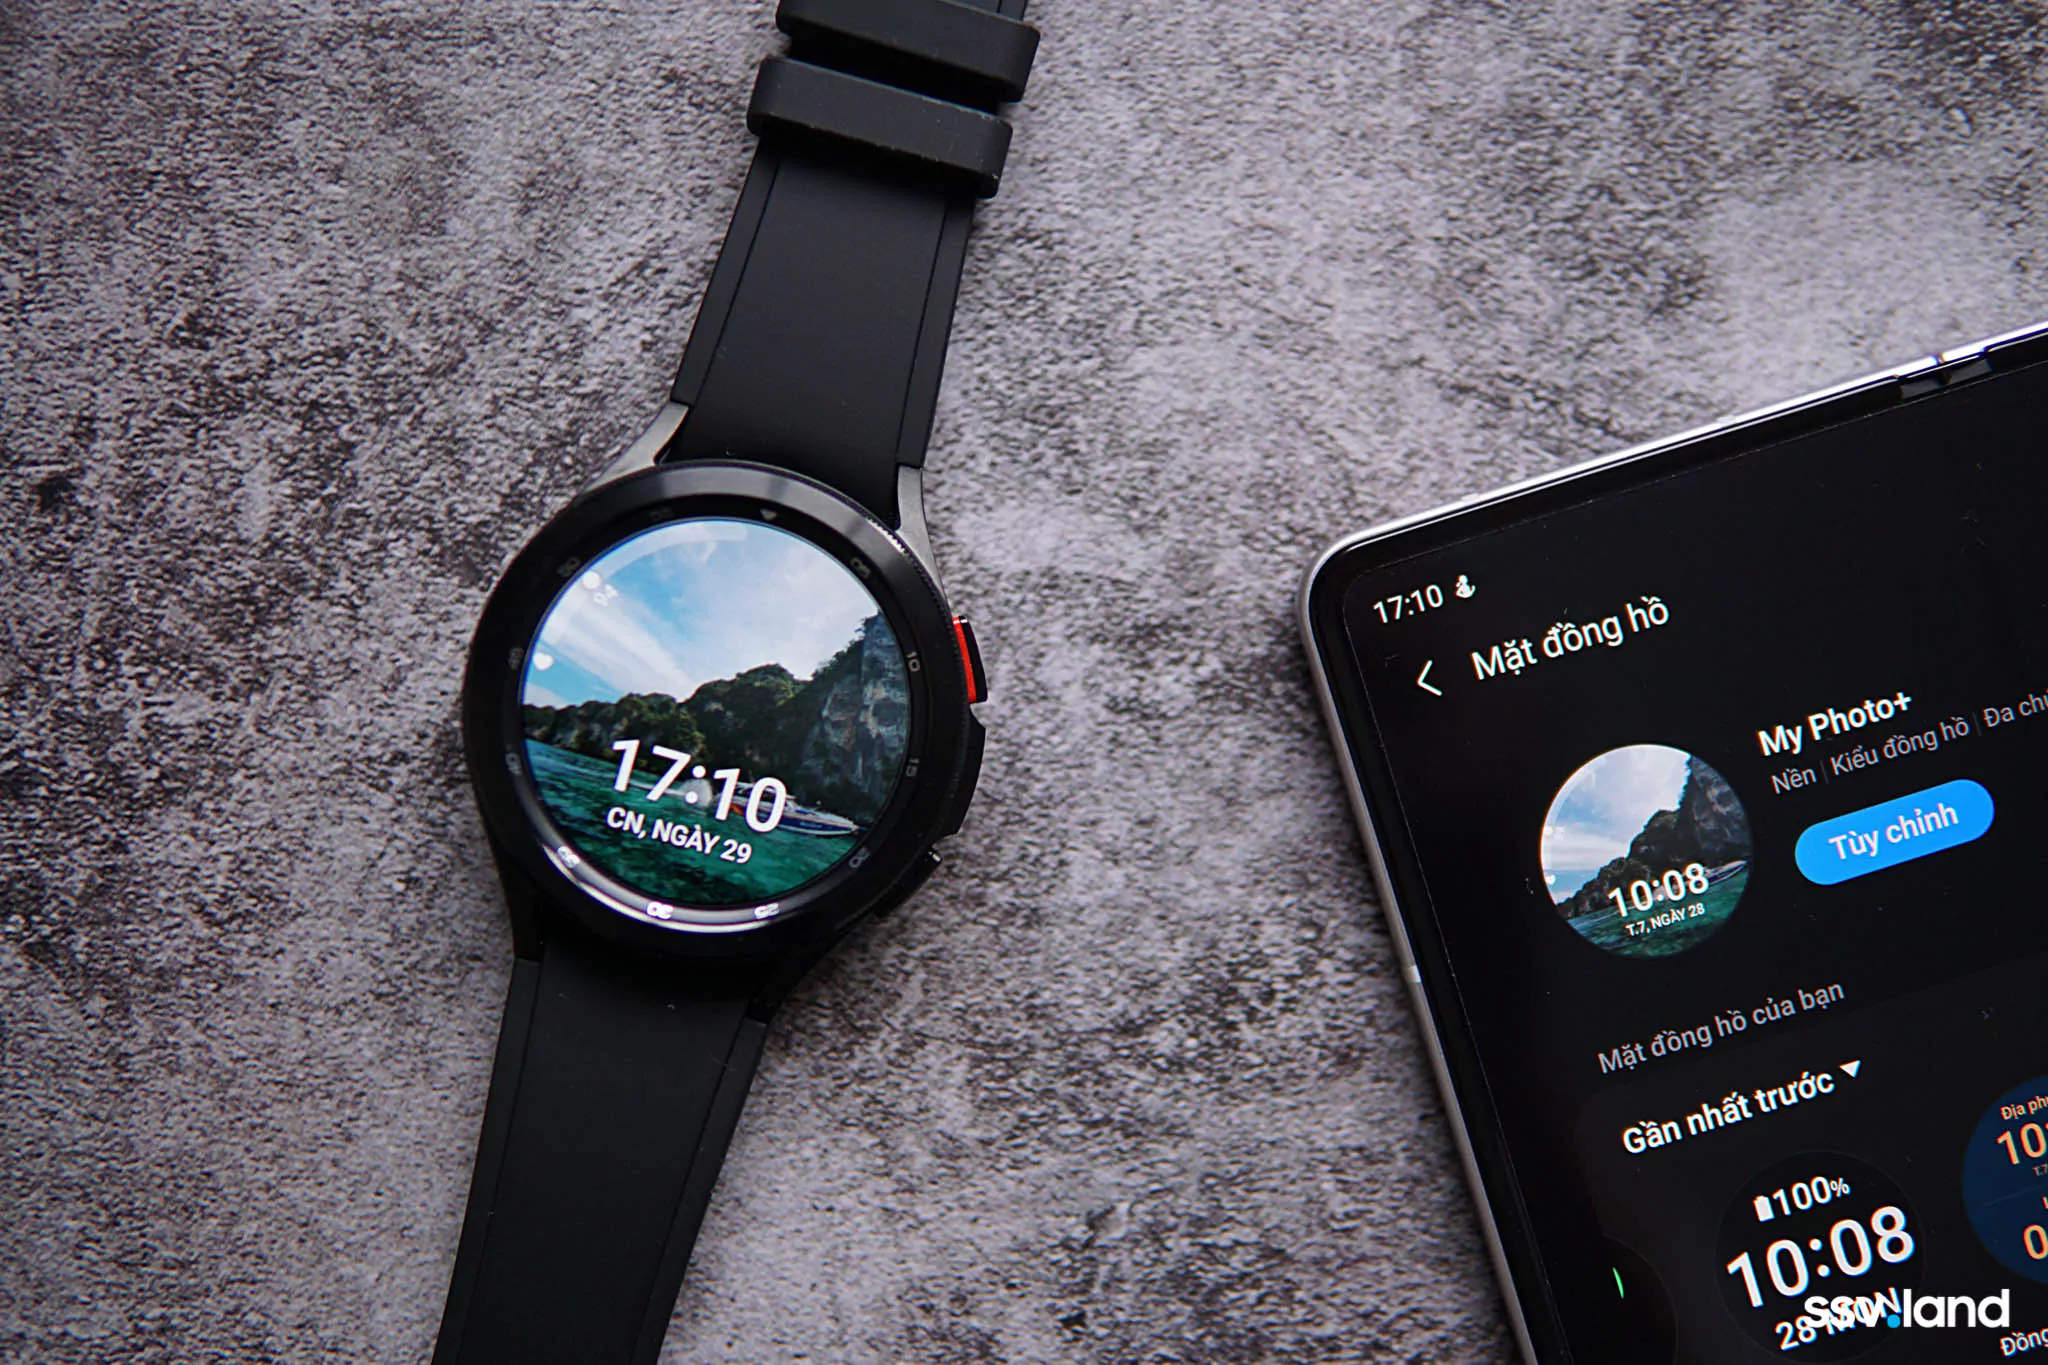 Samsung Galaxy Watch 3: Không chỉ là một chiếc đồng hồ thông minh, Samsung Galaxy Watch 3 còn là một thiết bị đa năng, đẹp mắt và tiện ích. Với nhiều tính năng thông minh và thiết kế bắt mắt, bạn sẽ không thể không yêu thích chiếc đồng hồ này. Hãy chờ đợi để khám phá thêm về Samsung Galaxy Watch